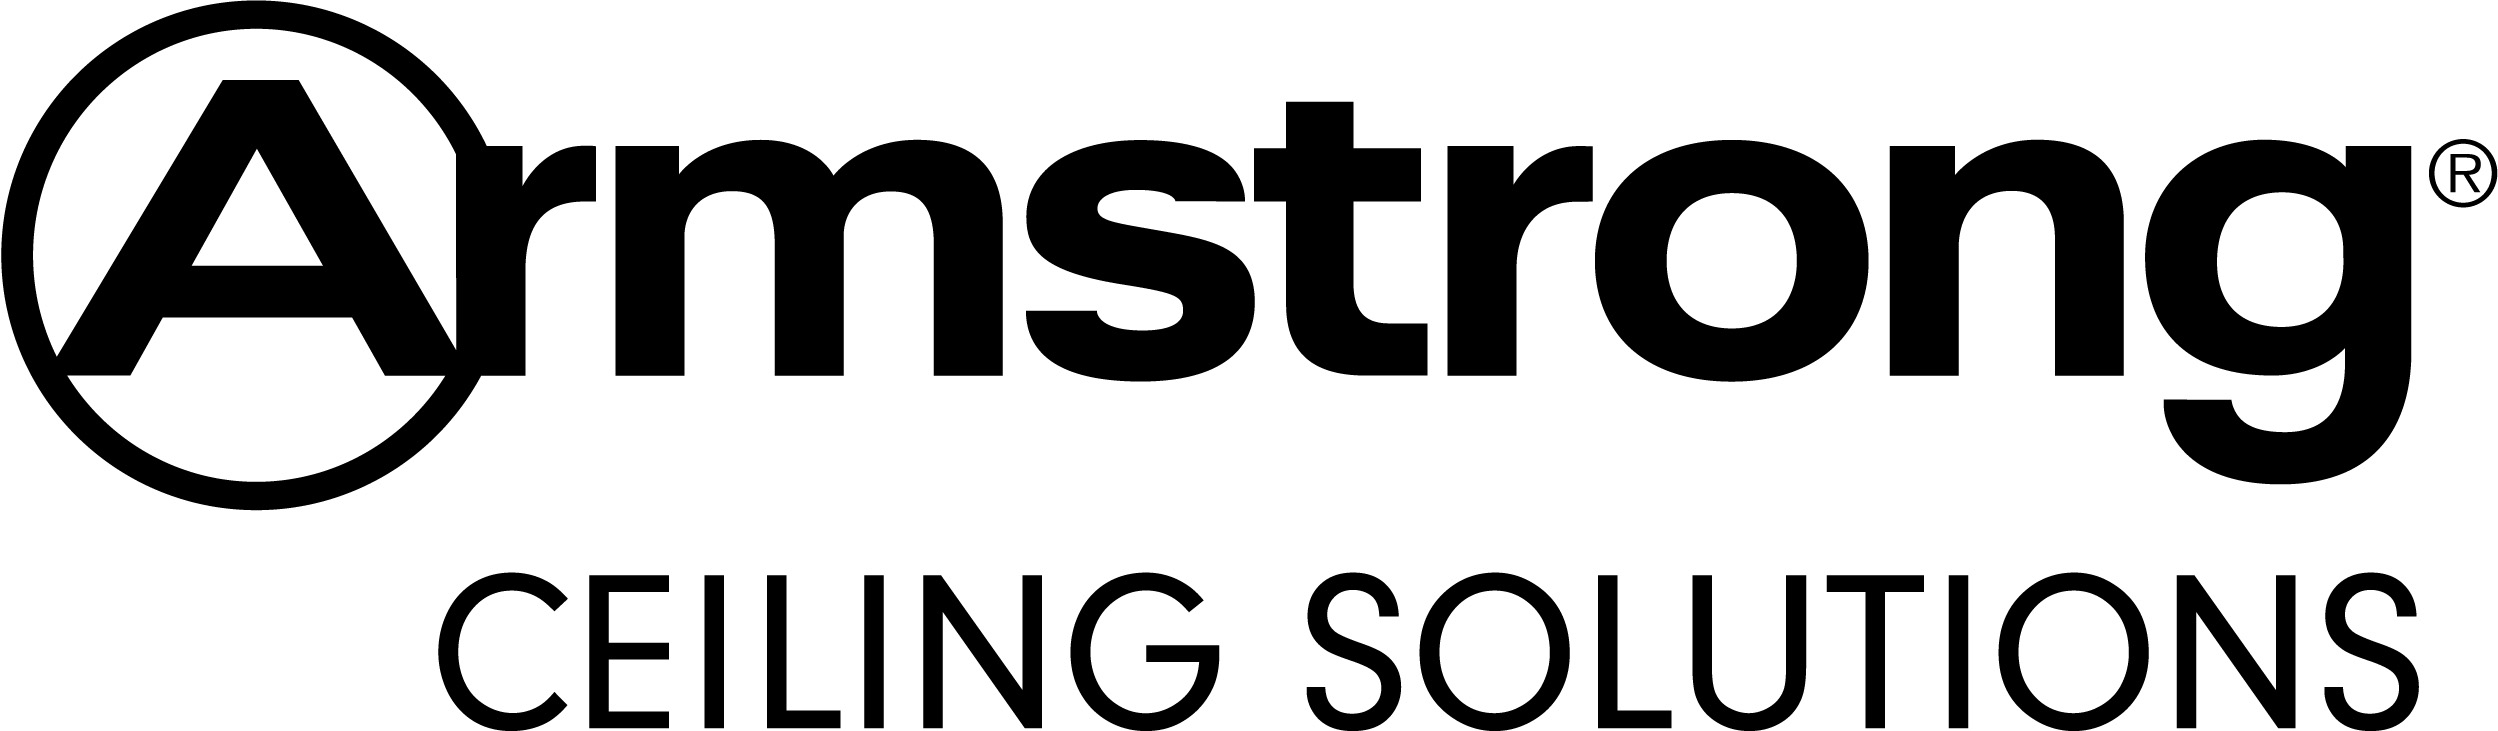 Armstrong logo.